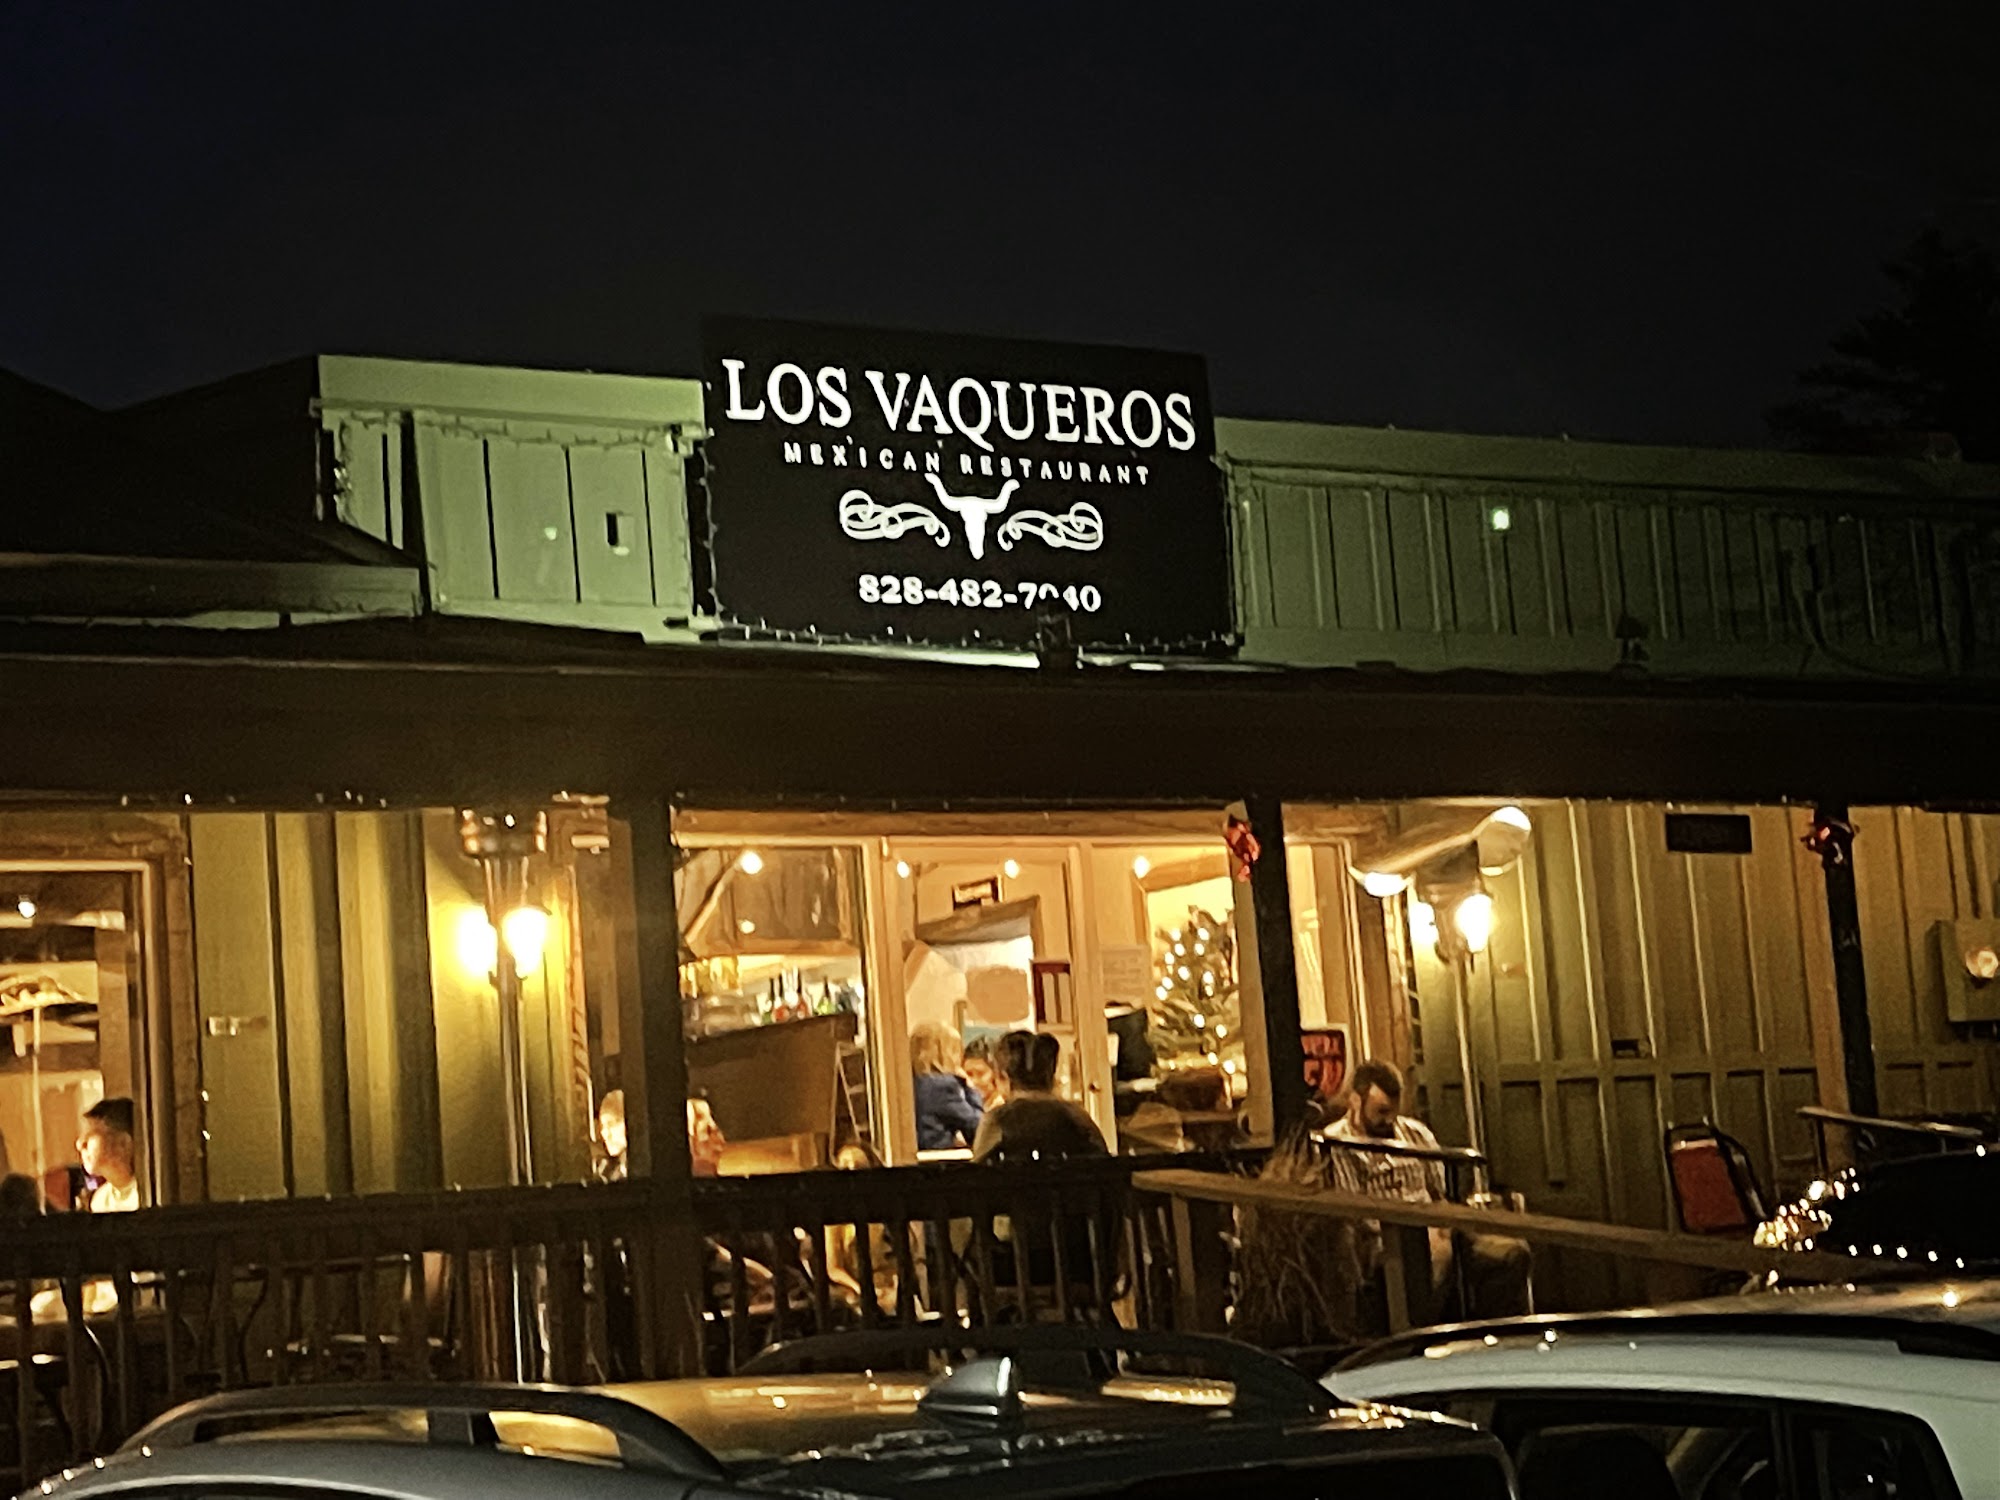 Los Vaqueros Mexican Restaurant